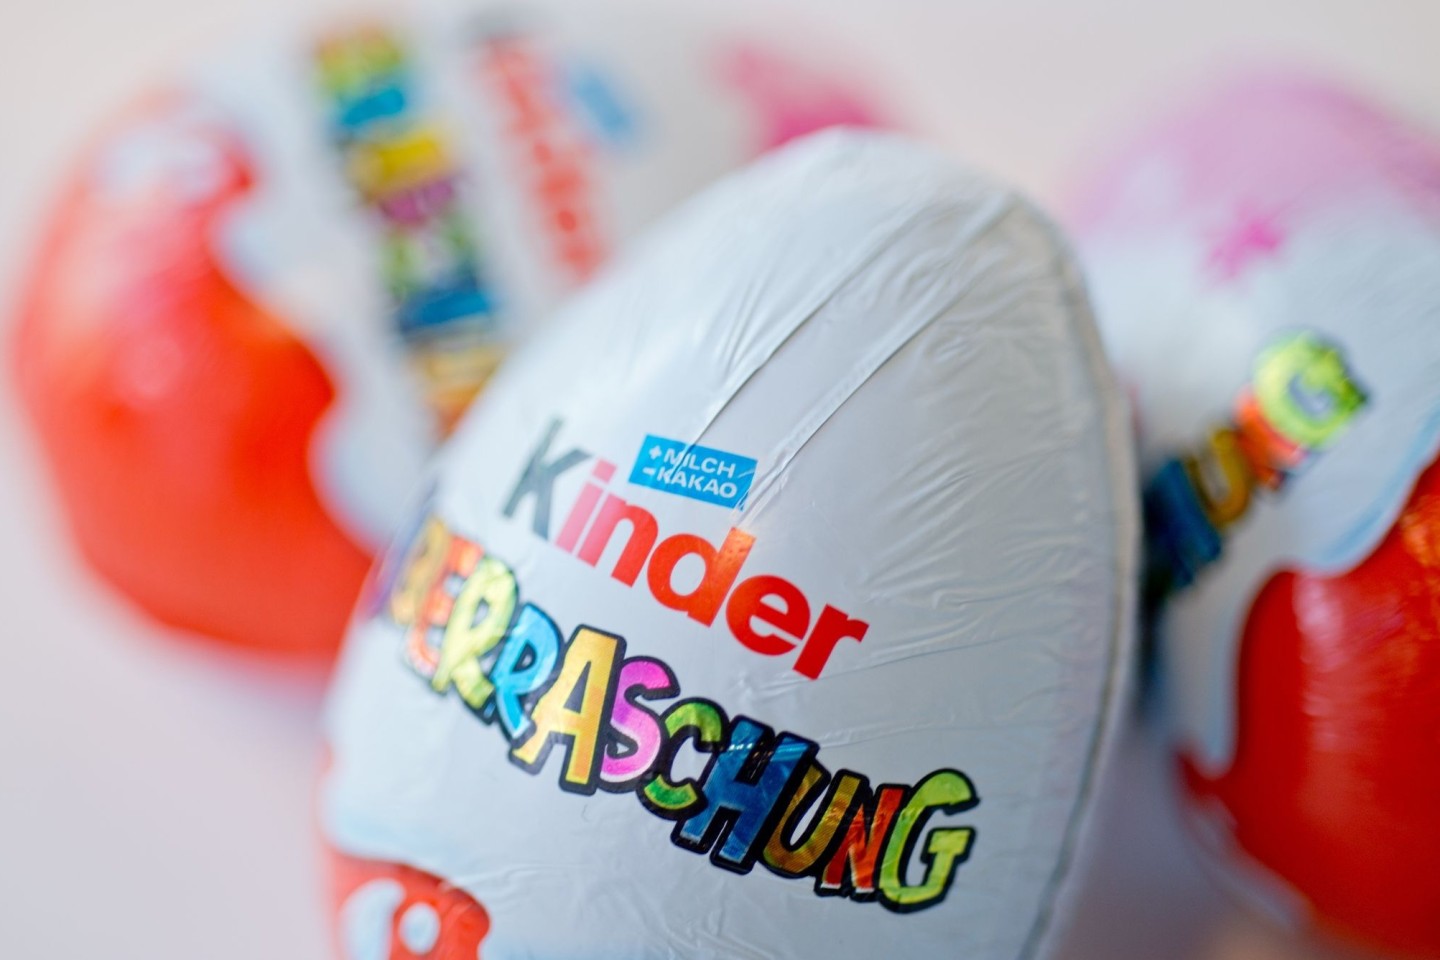 Knapp zwei Wochen vor Ostern ruft Ferrero in Deutschland einige Chargen verschiedener Kinder-Produkte zurück - darunter kinder Überraschung 3er Pack mit dem Mindesthaltbarkeitsdatum zwisch...